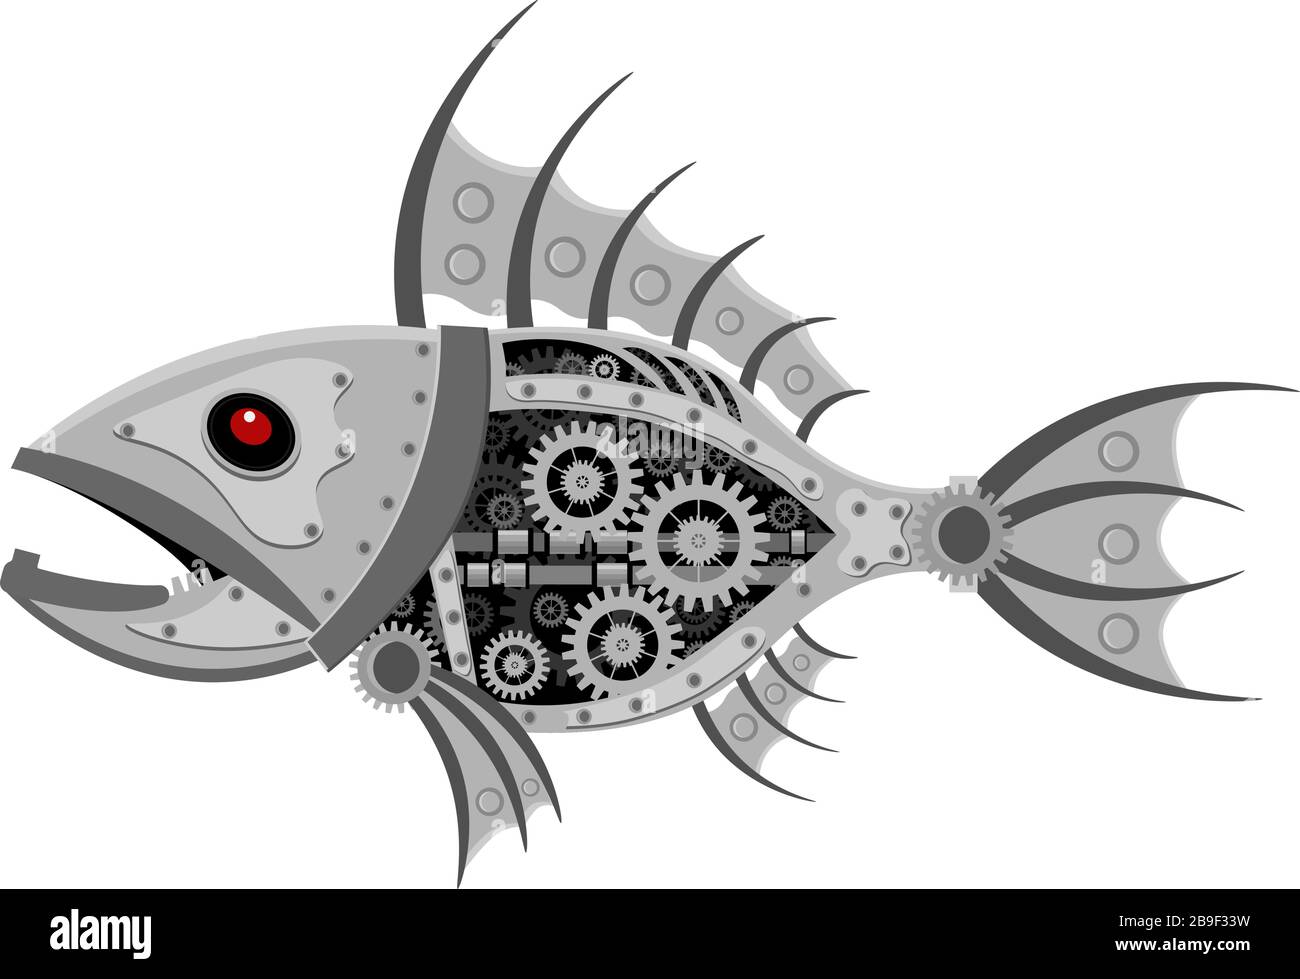 Robot di pesce steampunk. Illustrazione vettoriale insolita del meccanismo del modello animale. Illustrazione Vettoriale